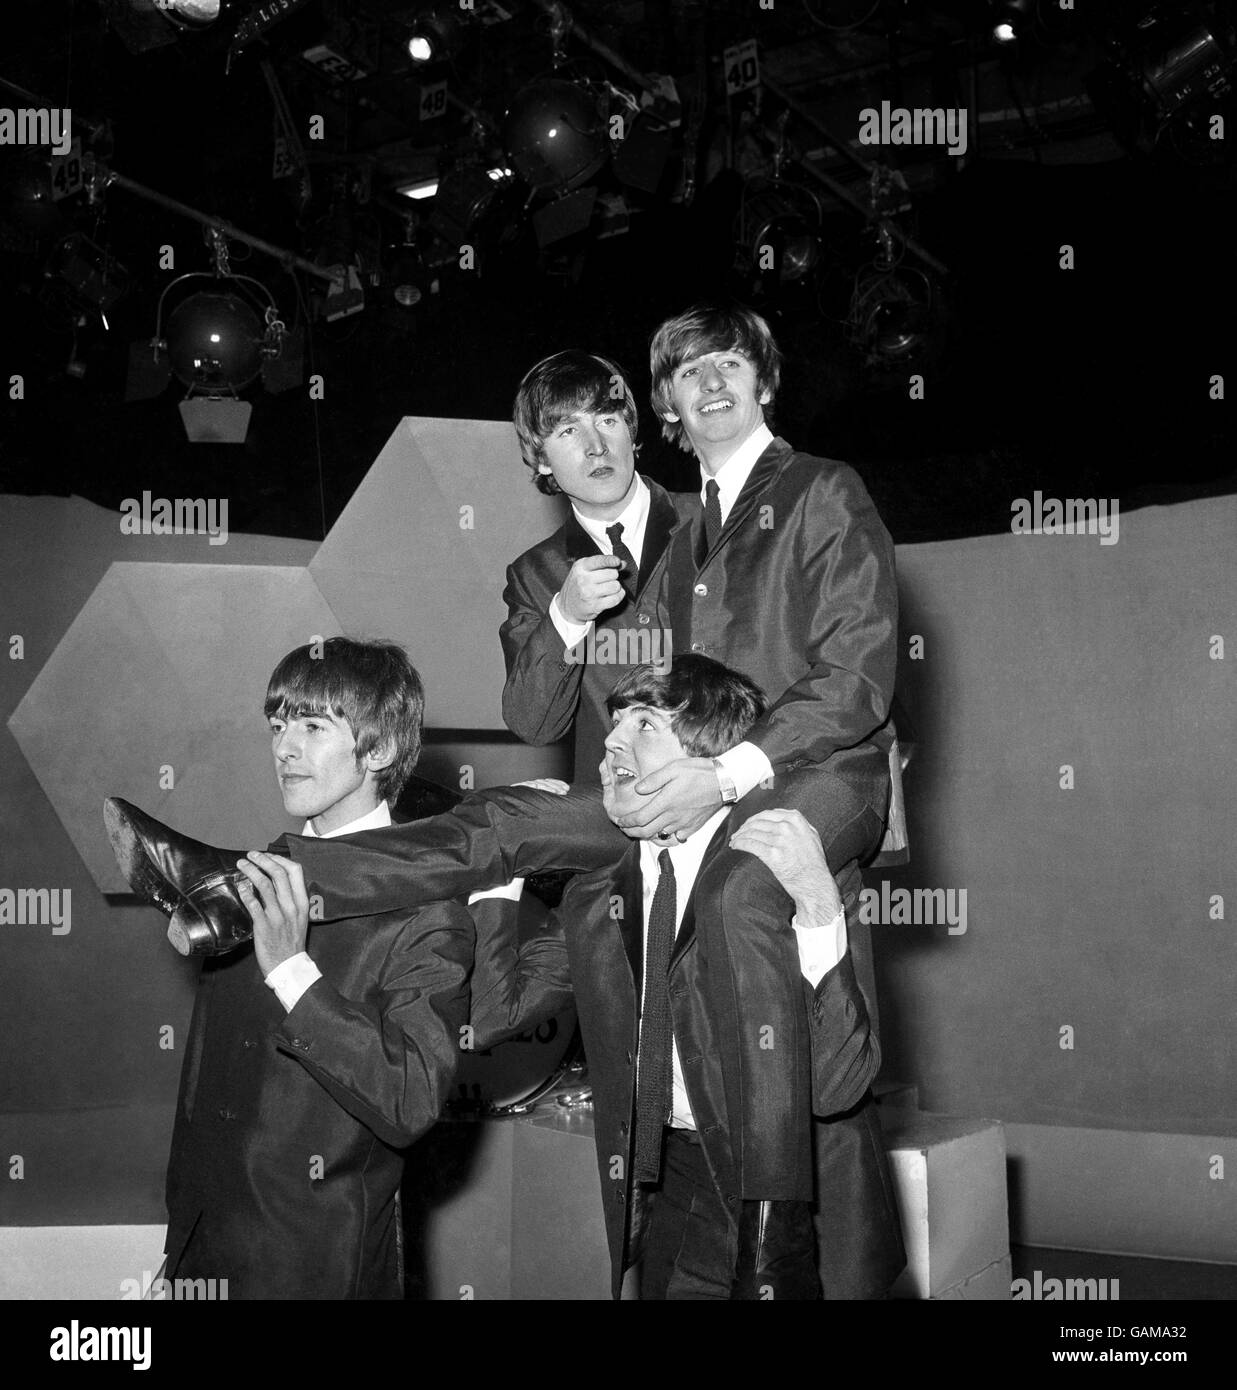 Le batteur de Beatles Ringo Starr sur les épaules de Paul McCartney aux studios Lime Grove de la BBC à l'occasion de son 24e anniversaire. Les autres Beatles sont, de gauche à droite, George Harrison et John Lennon. Banque D'Images